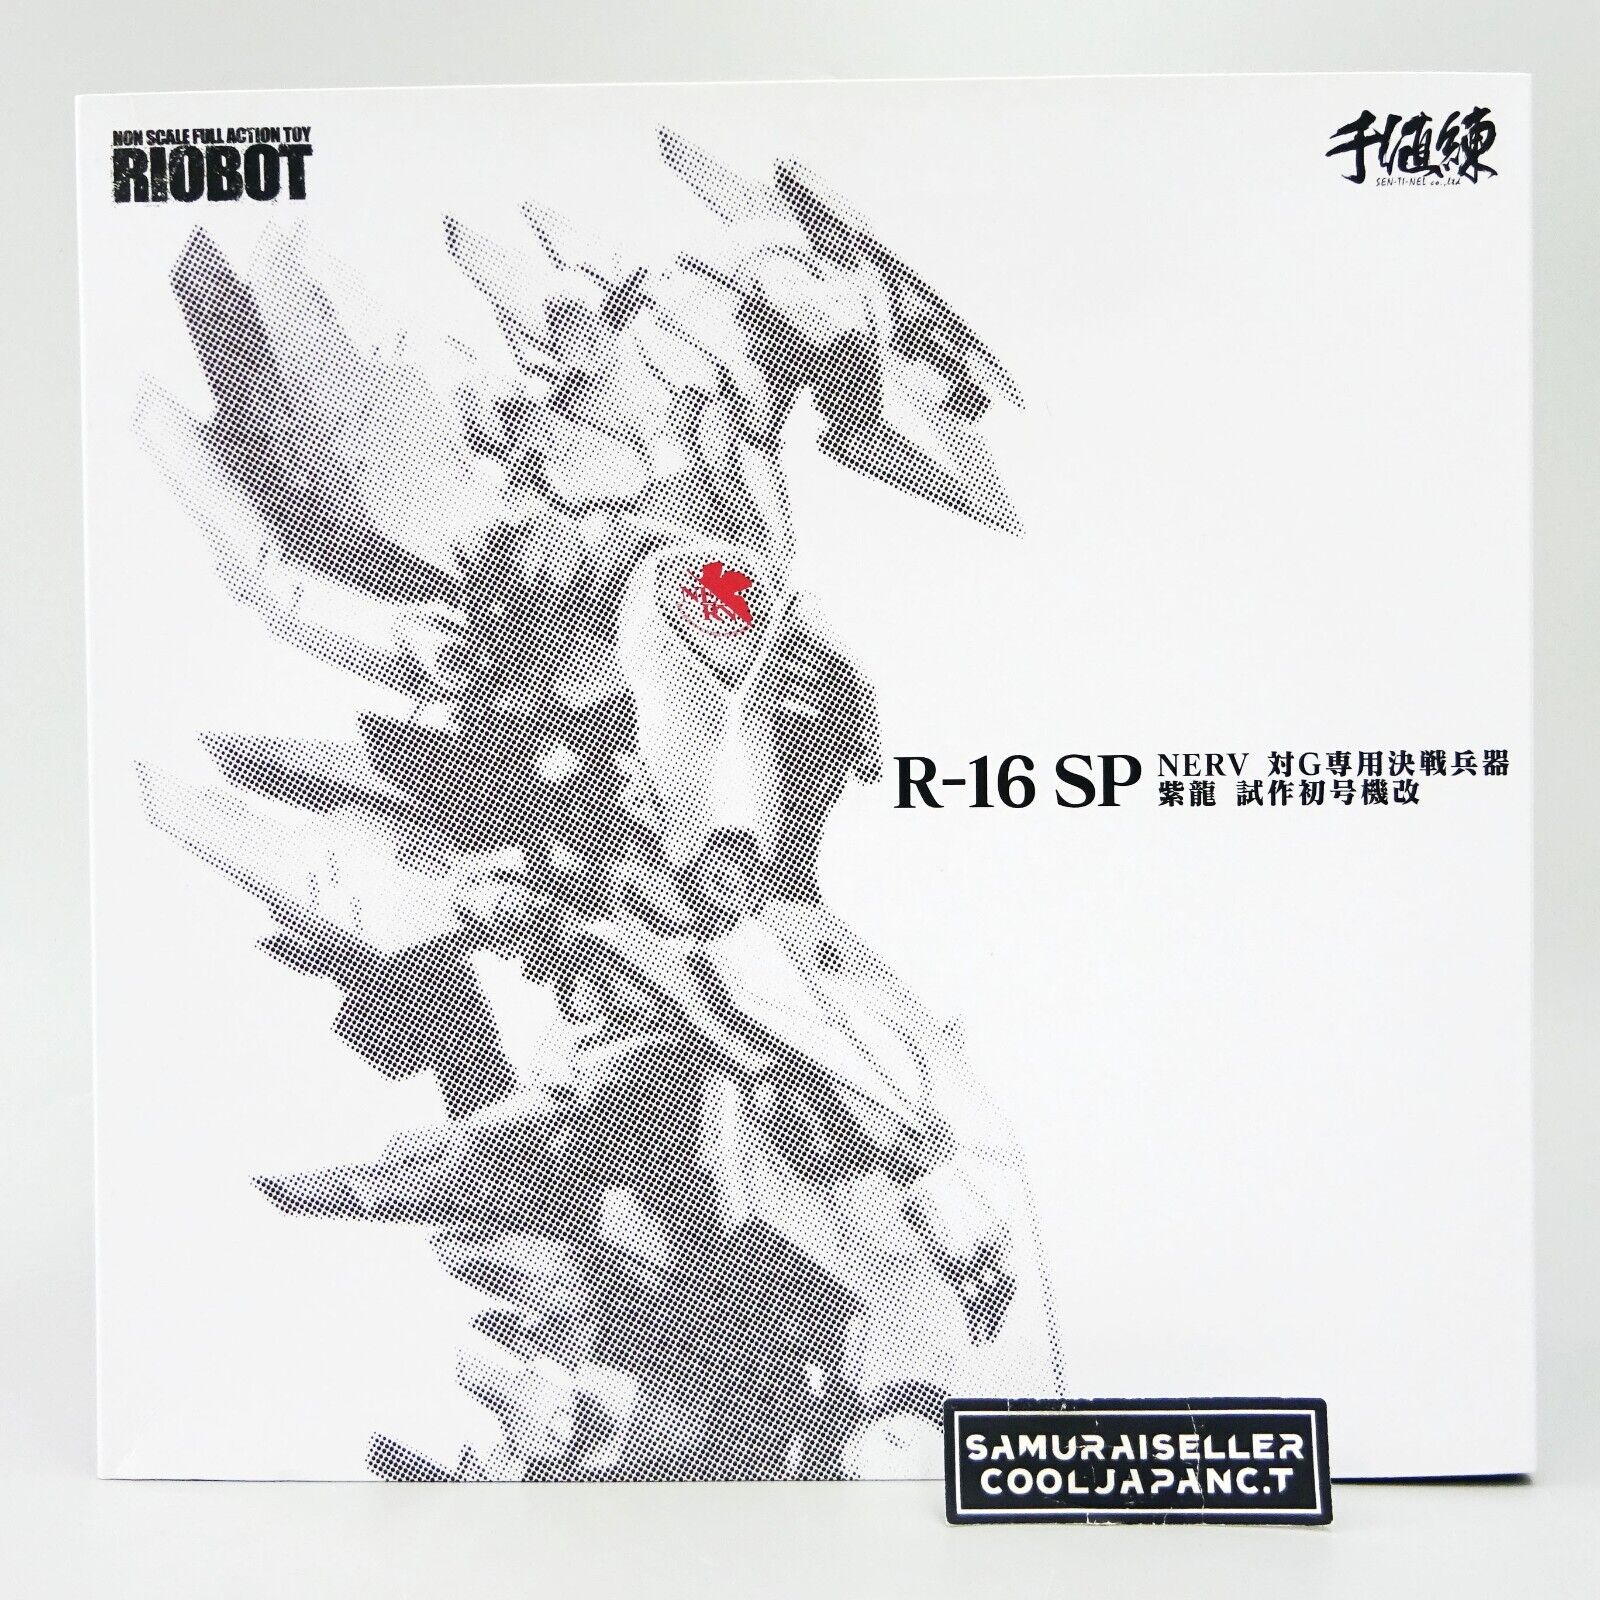 RIOBOT R-16SP Godzilla vs. Evangelion Nerv vs. G Kessen Shiryu Sentinel LIMITED